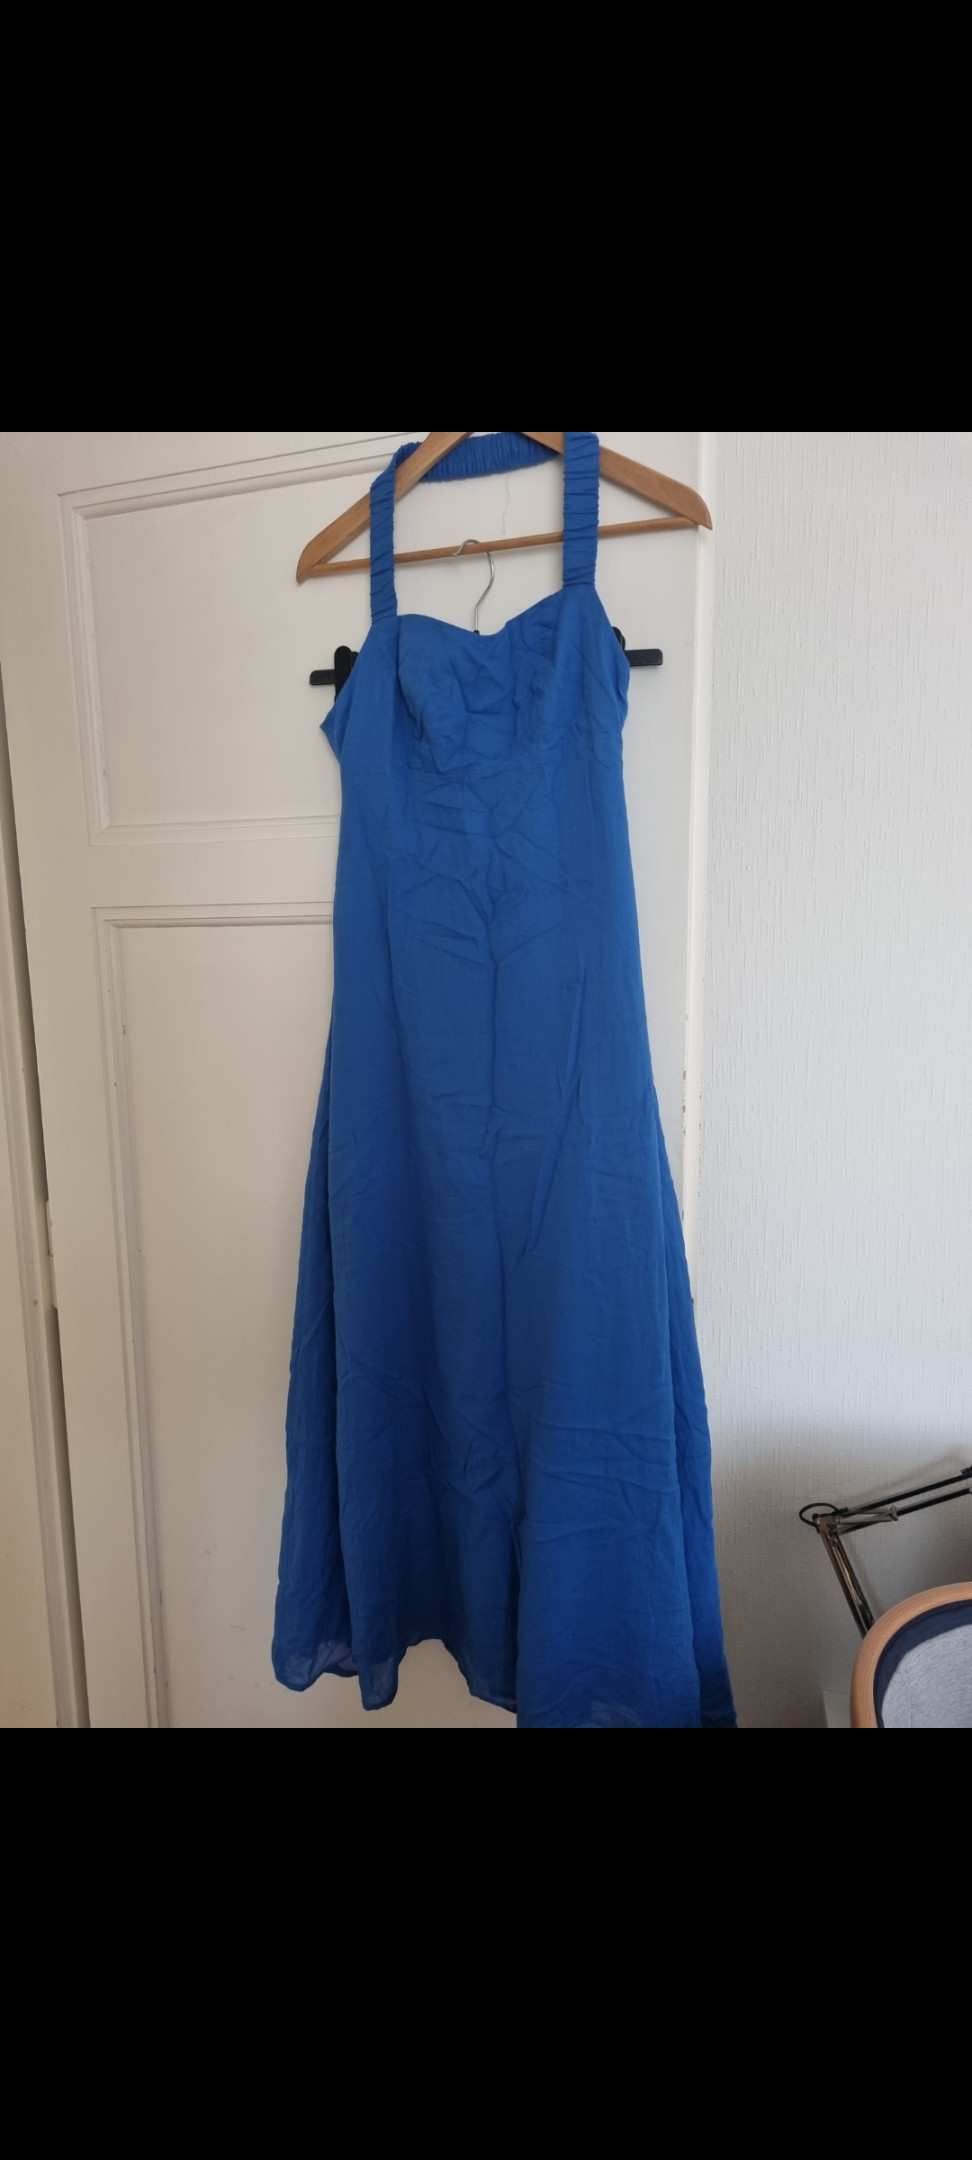 Blue long dress kookai